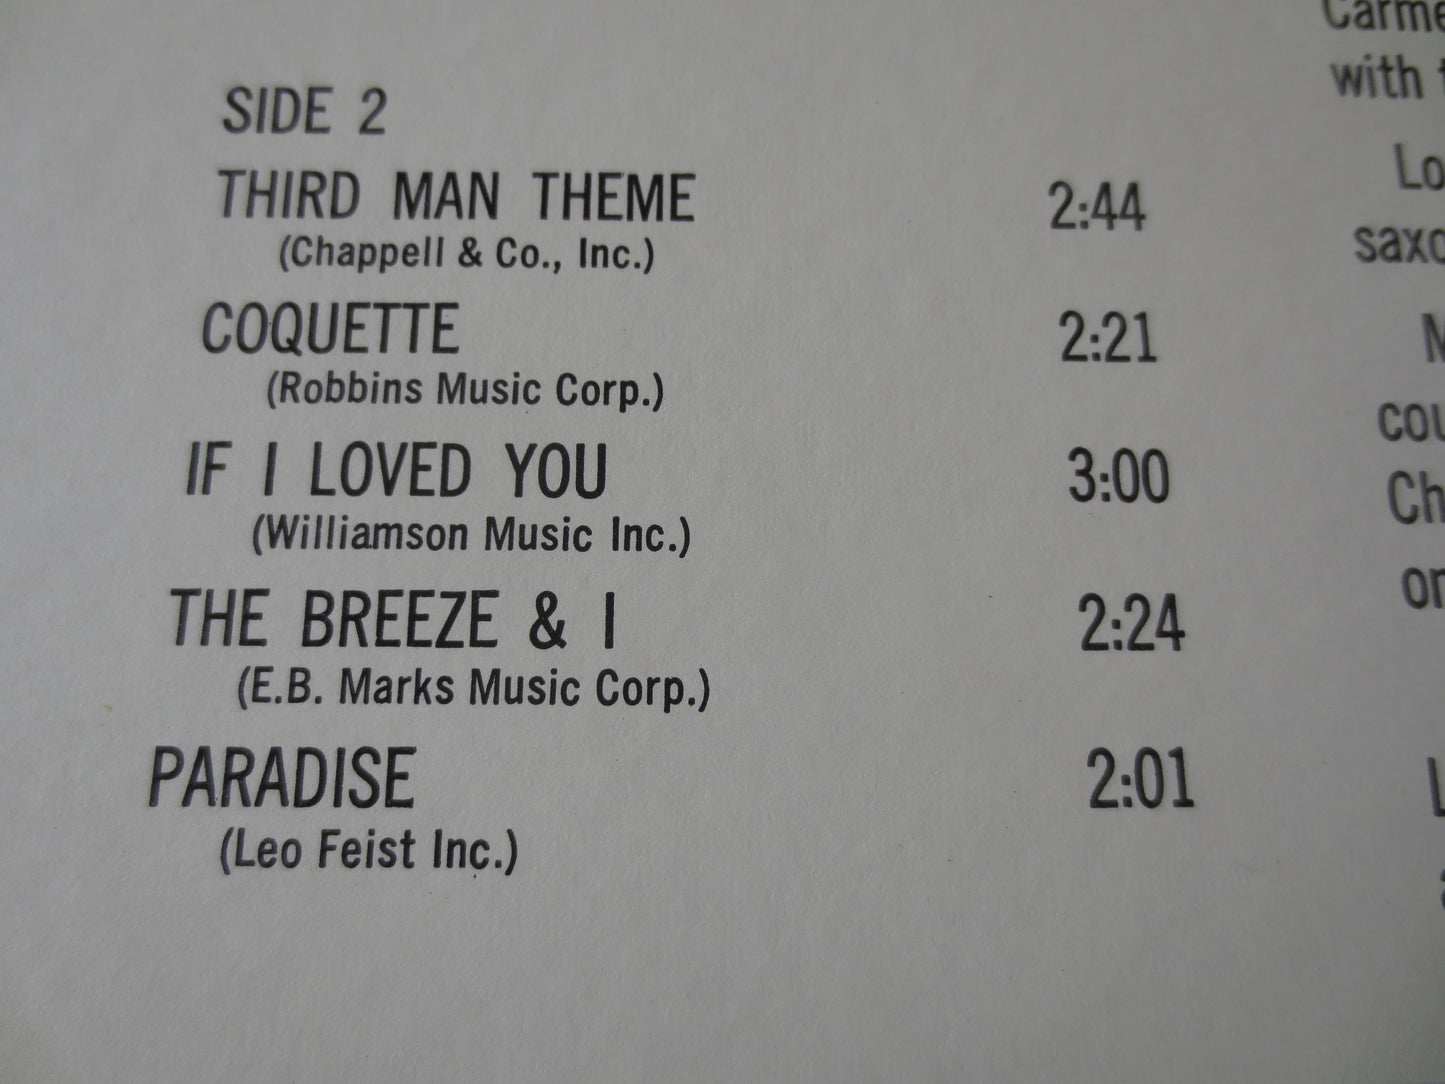 GUY LOMBARDO, Sweet and HEAVENLY, Guy Lombardo Records, Jazz Records, Record Vinyl, Guy Lombardo Albums, Vinyl, 1967 Record